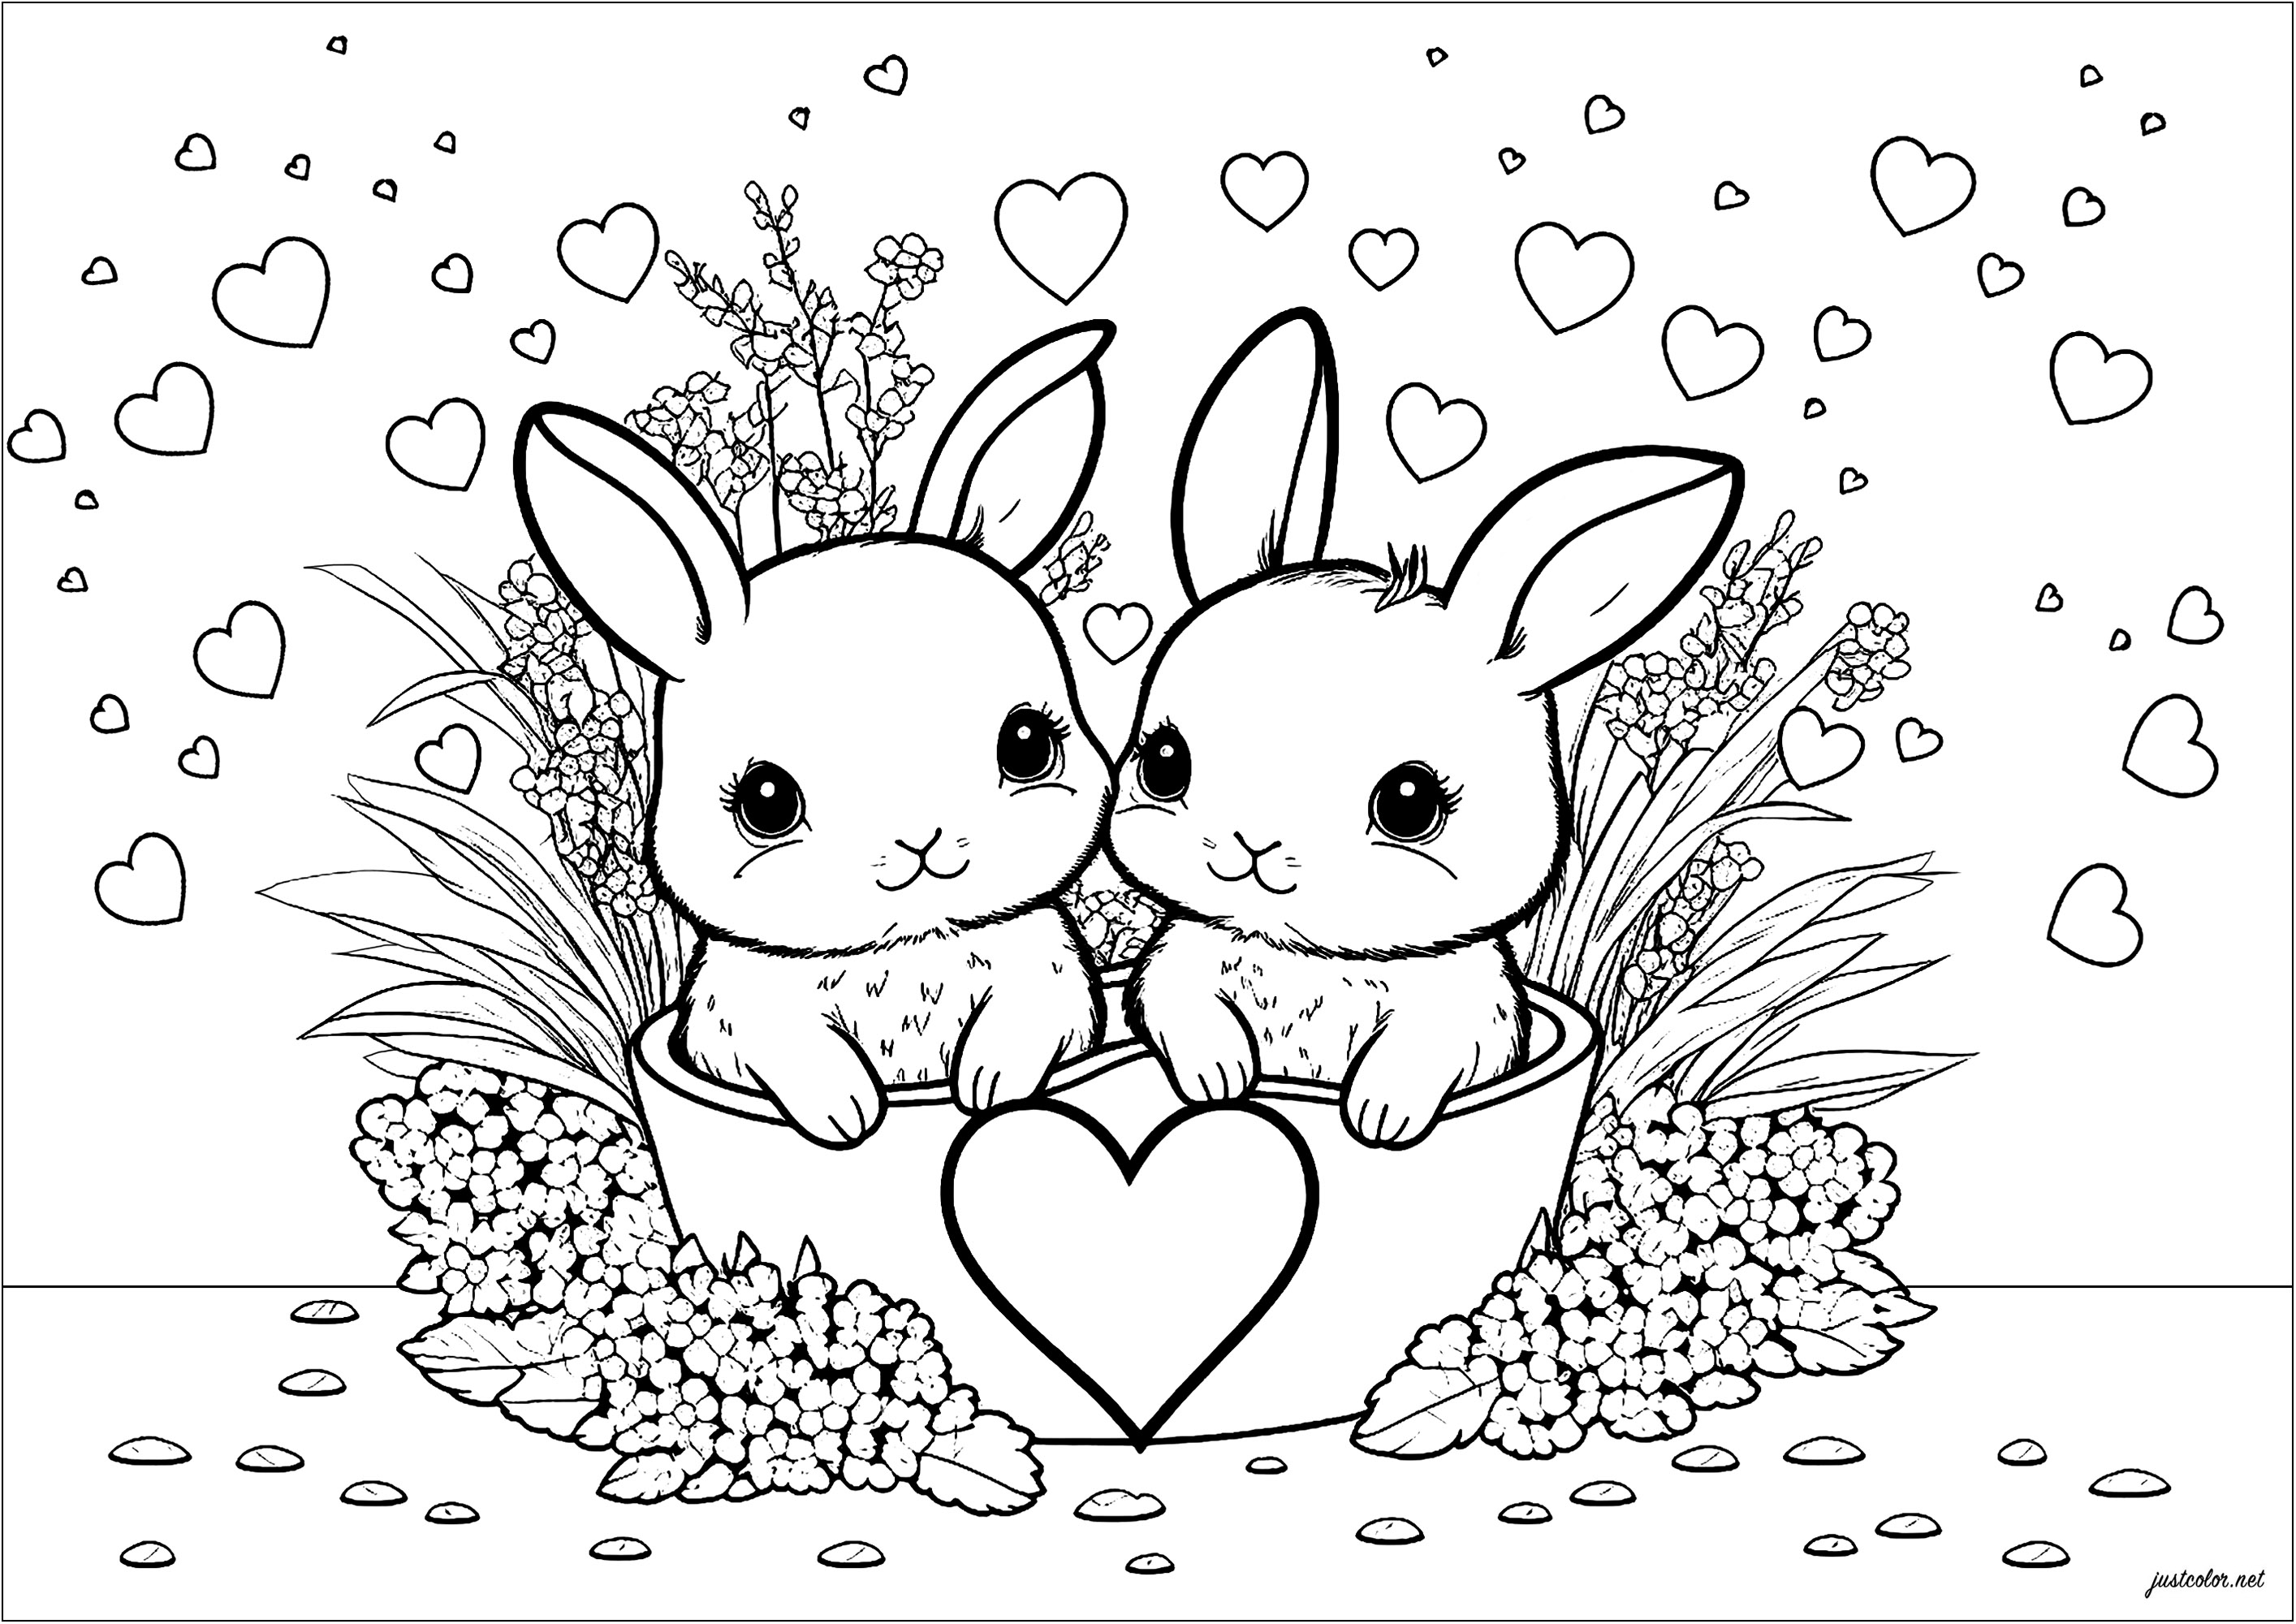 Coloriage simple représentant deux lapins et de nombreux coeurs. Ce coloriage est vraiment très mignon et très enfantin. Il représente deux petits lapins qui sont entourés de nombreux coeurs colorés. Les lapins sont très expressifs et leurs oreilles sont grandes et douces.